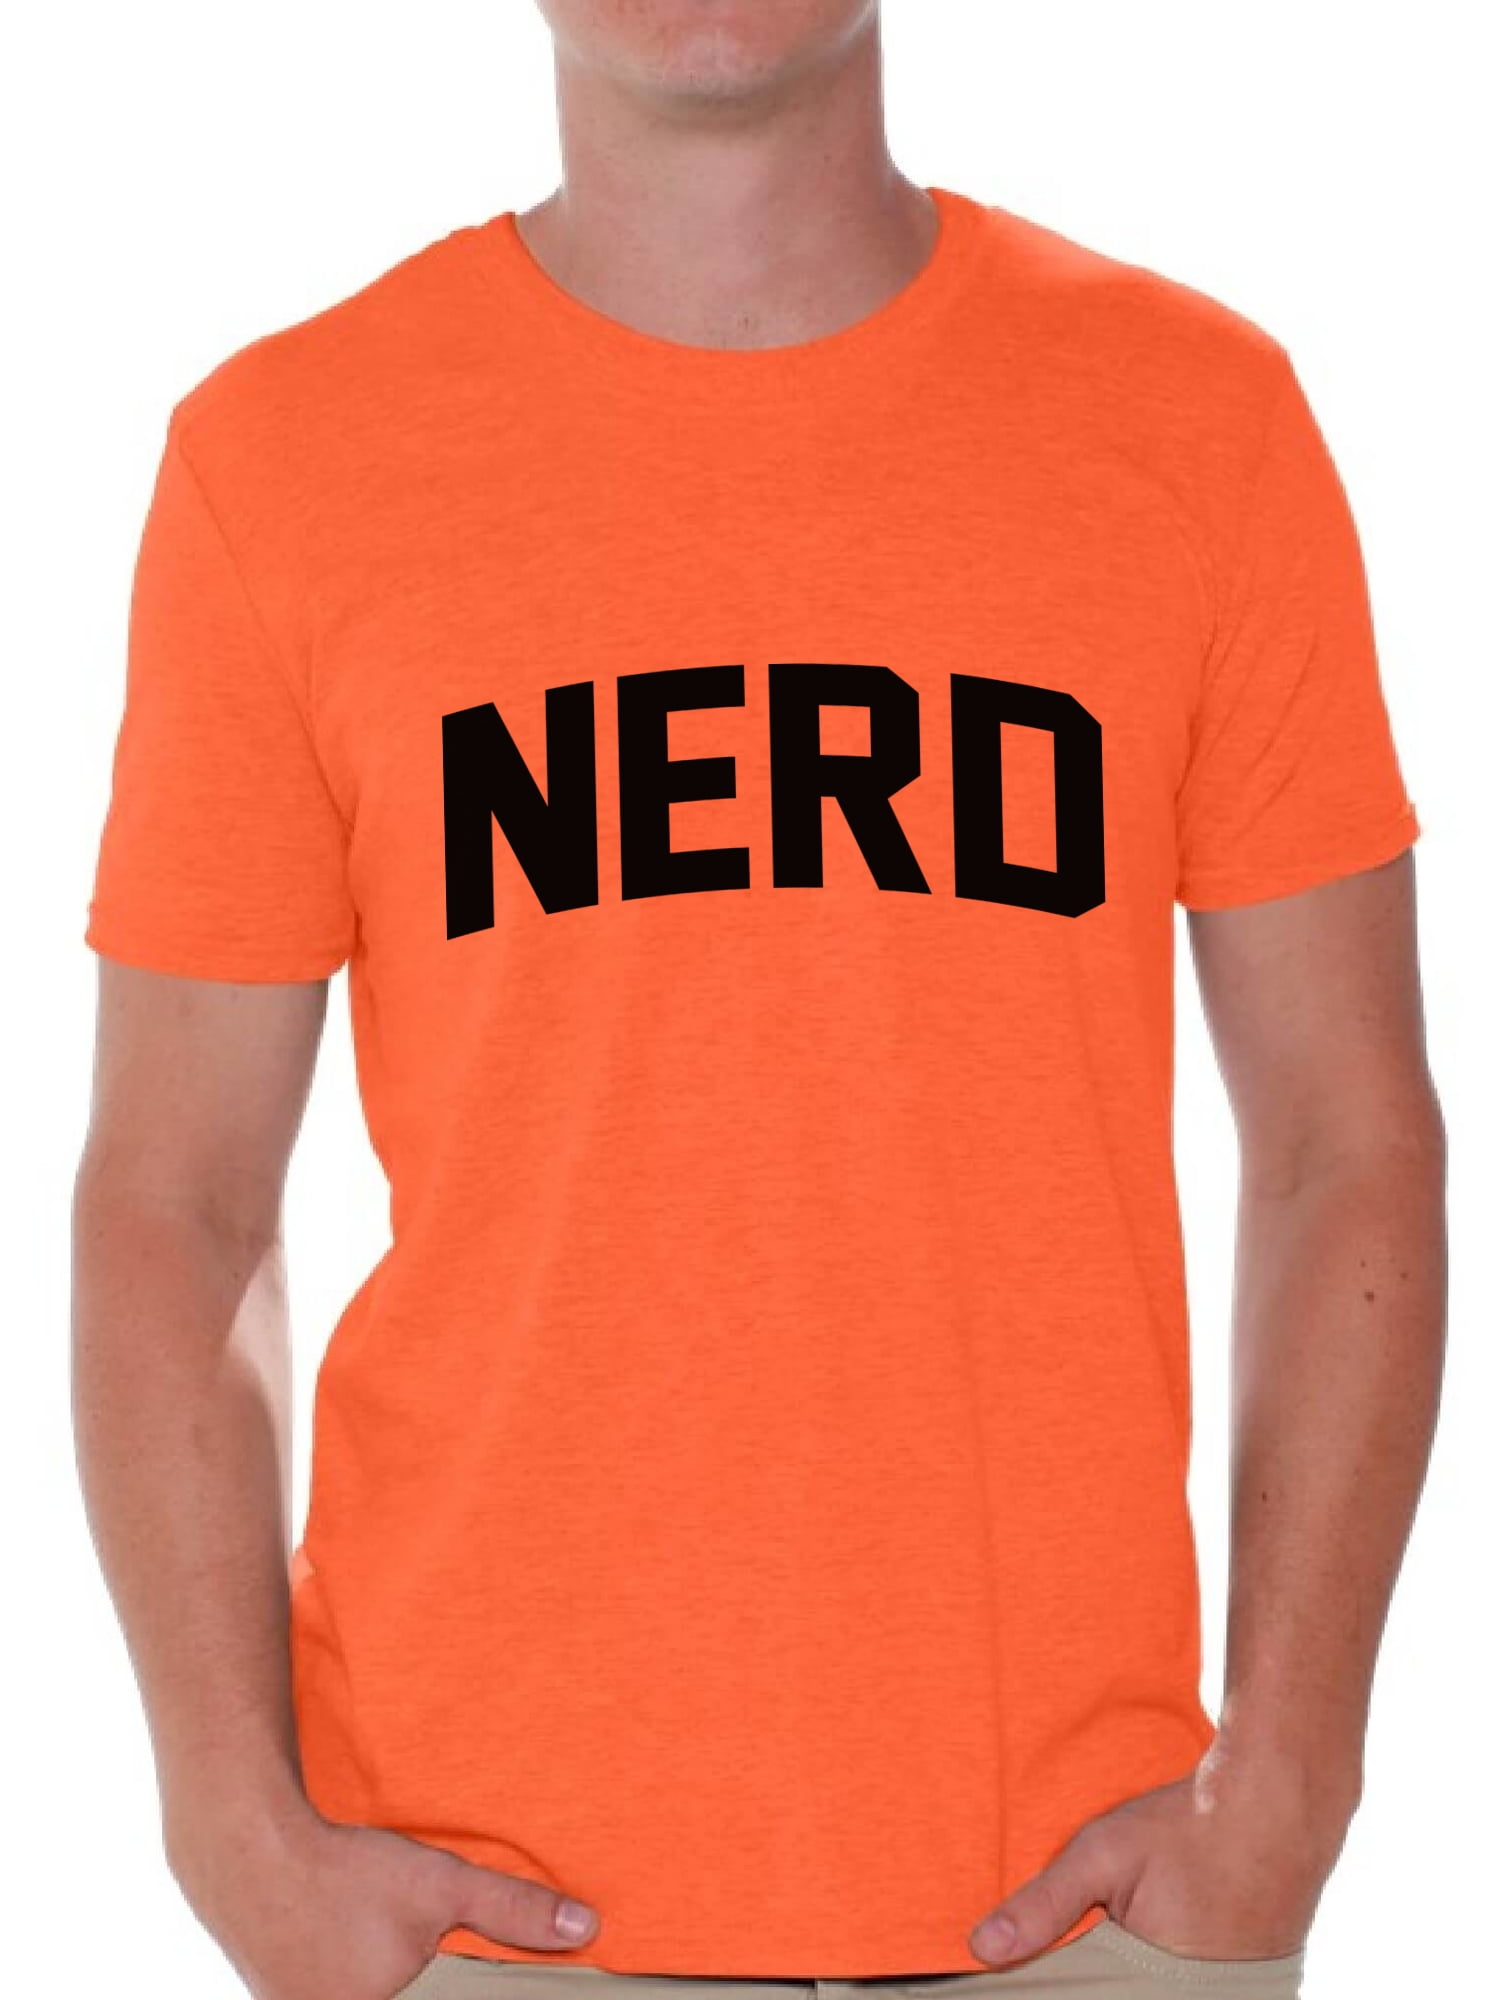 Awkward Styles Nerd T Shirt For Men Nerd Geek Shirt Nerd Lovers T Shirt Nerd Men Clothing Nerd